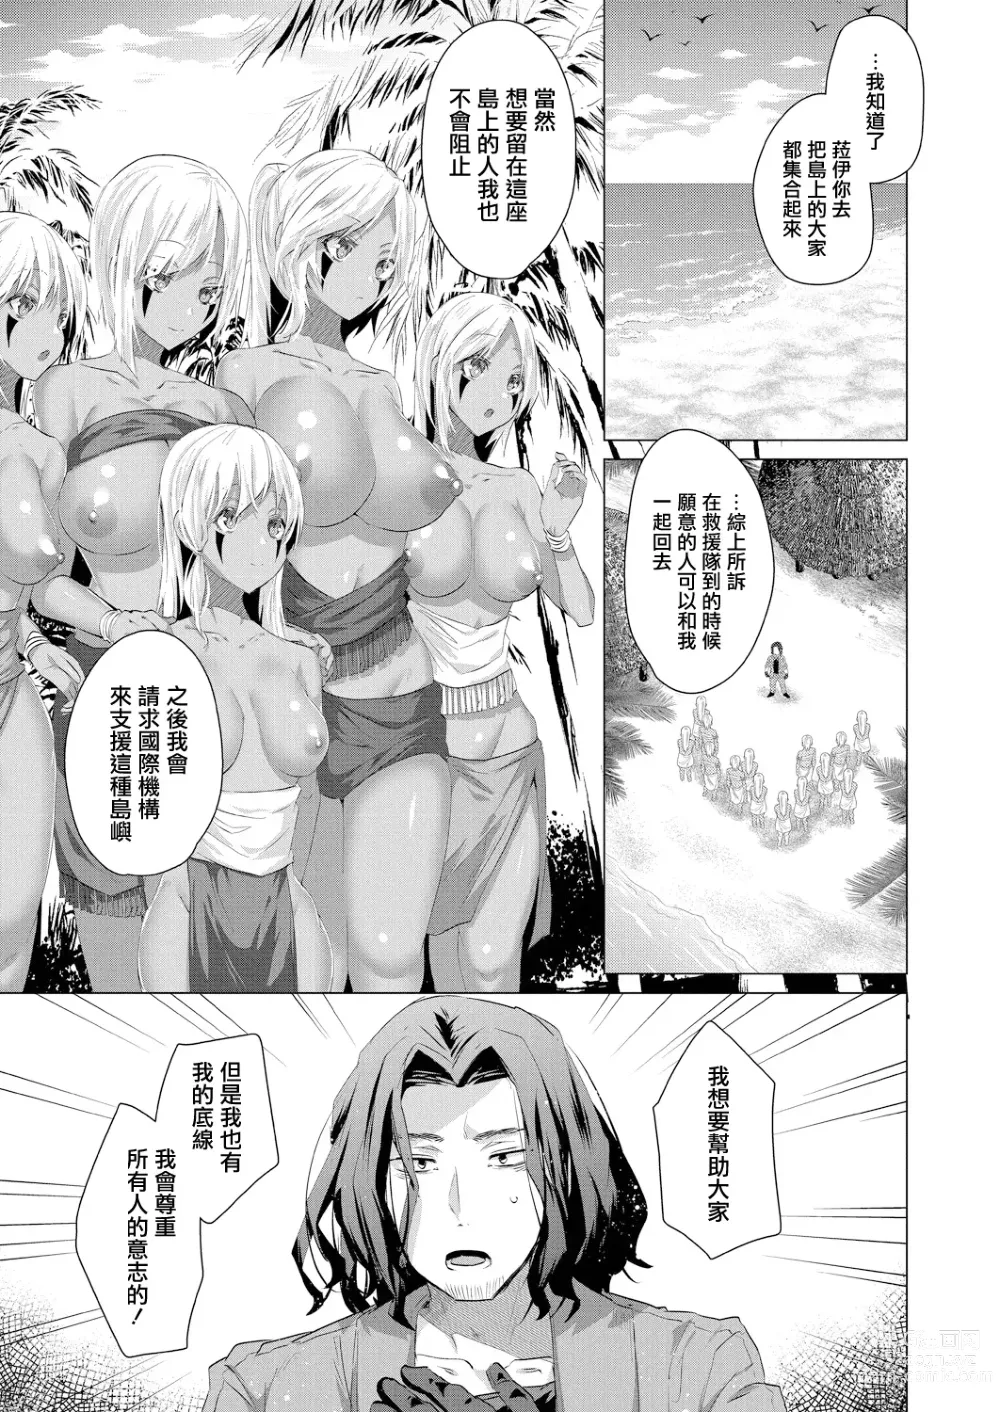 Page 3 of manga Kassyoku Musume no Harem Shima - Harem Island of Brown Girl Ch. 5-6